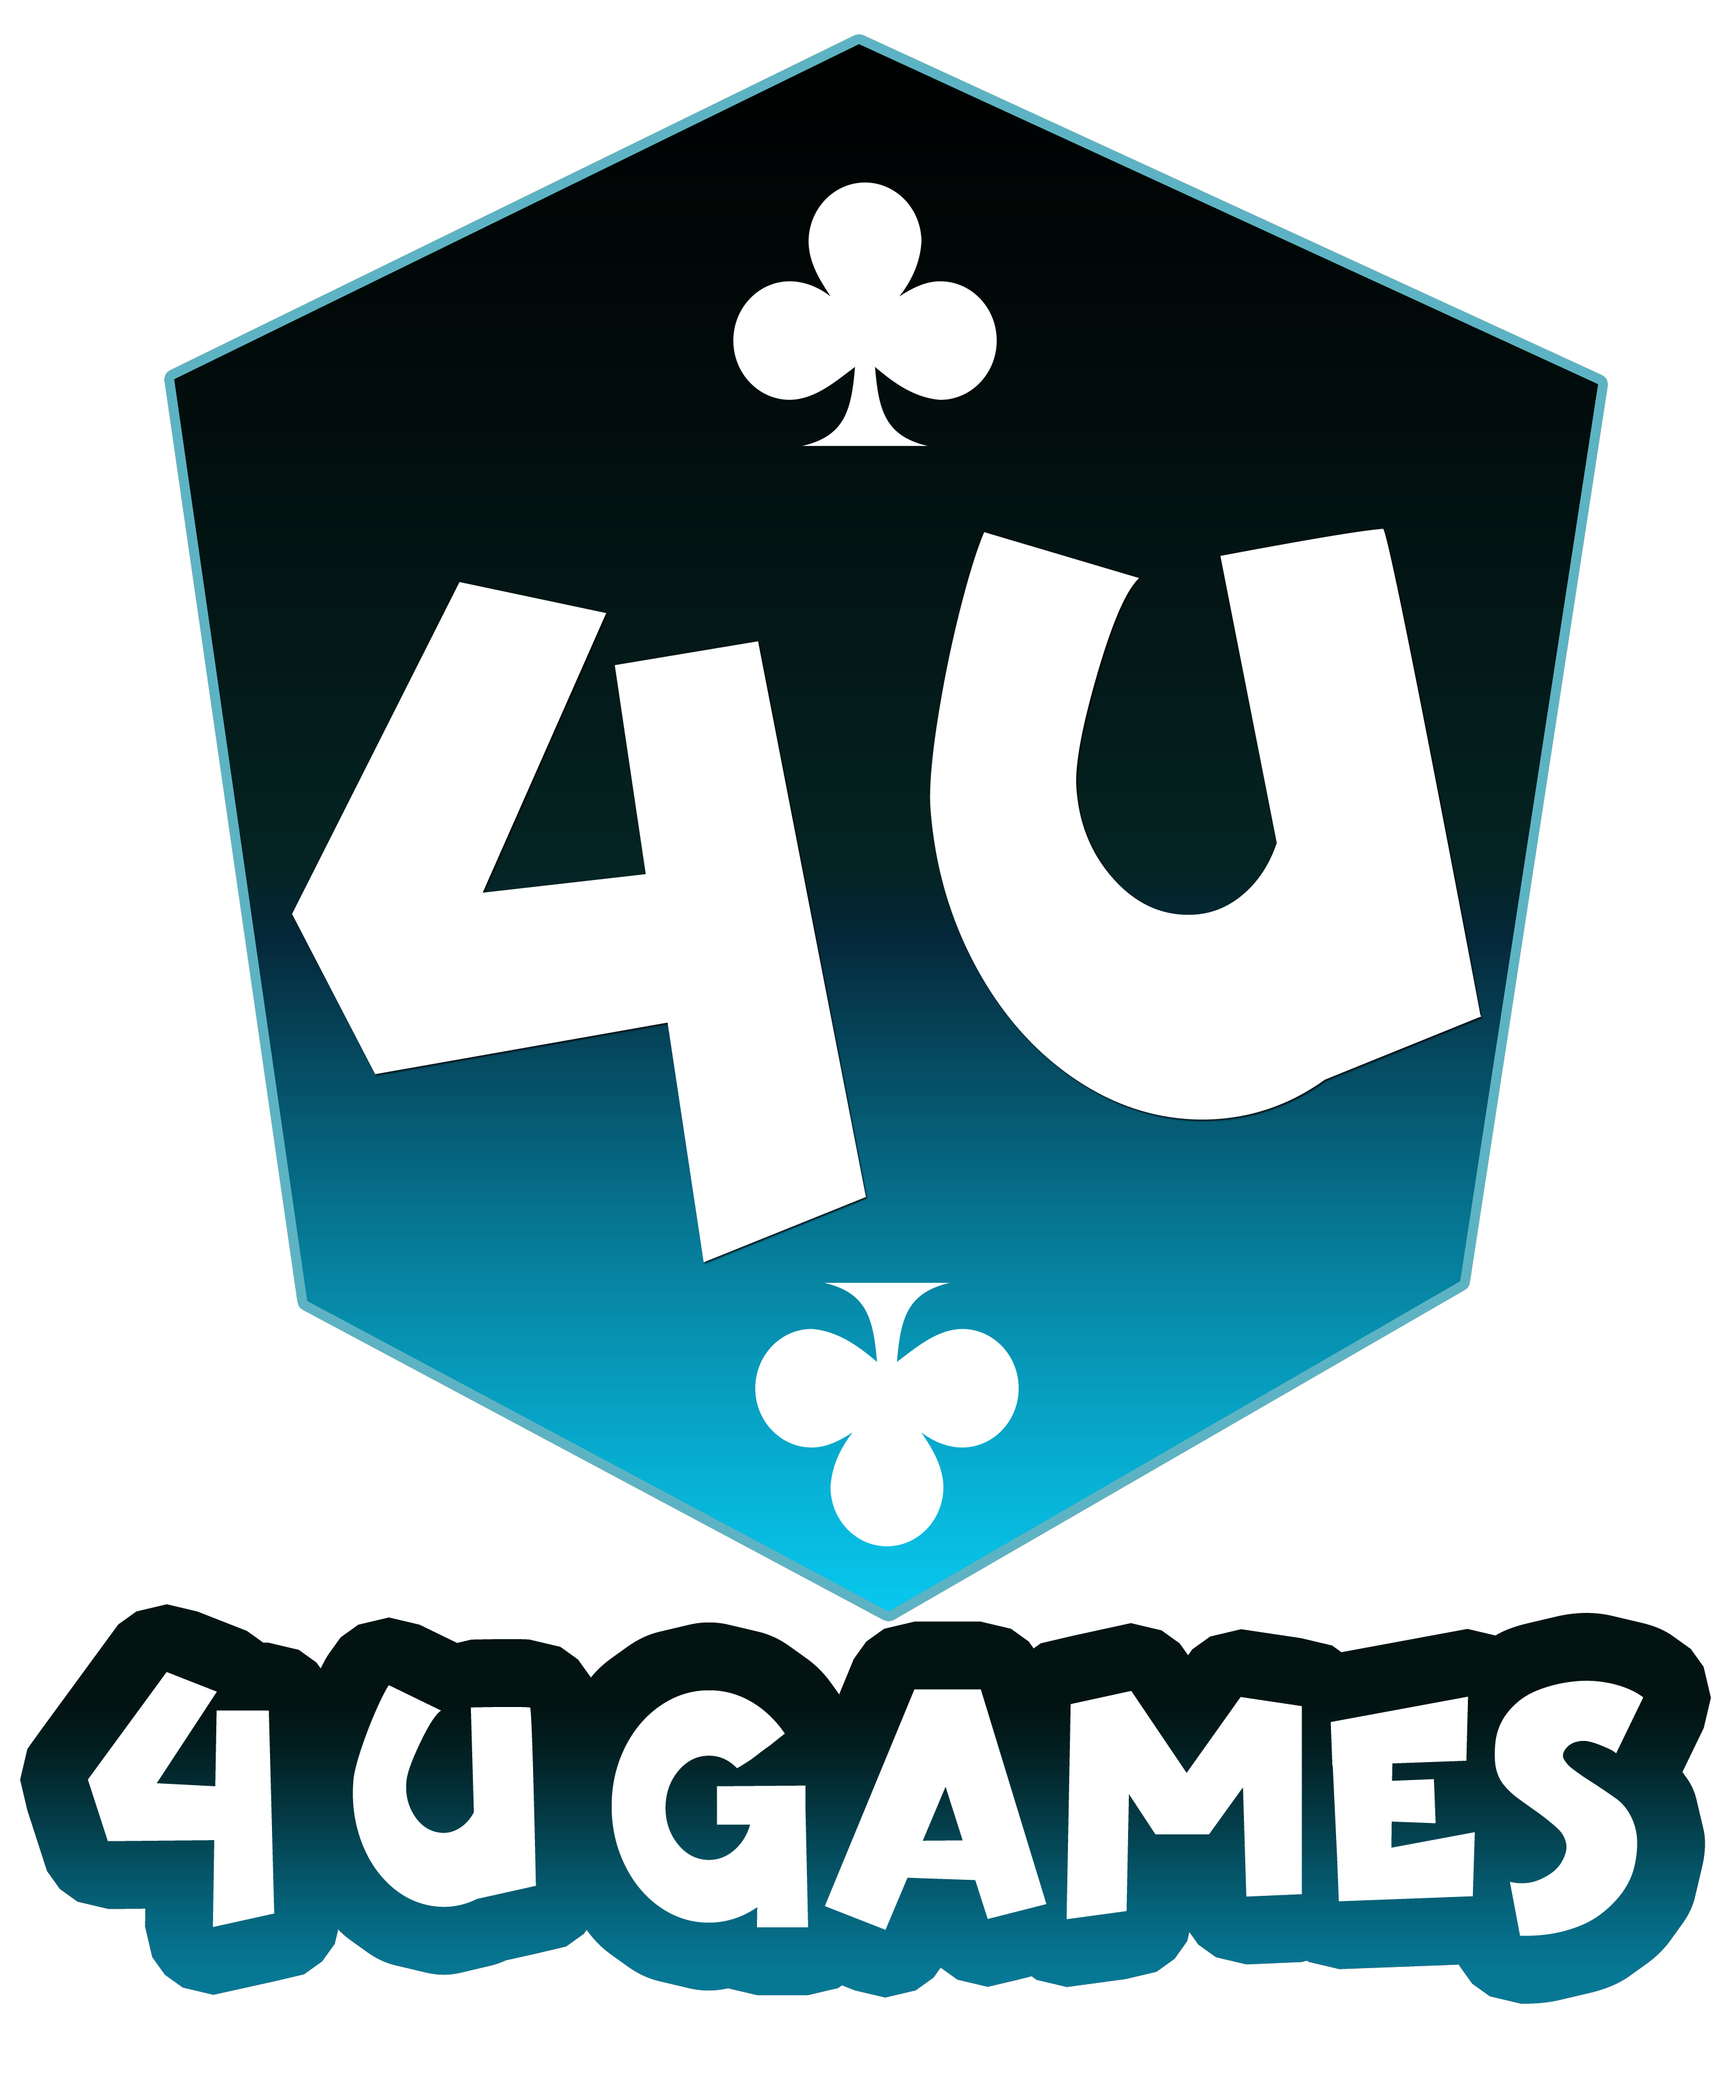 Game4U Launches Digital Game Downloads Service Downloads4U